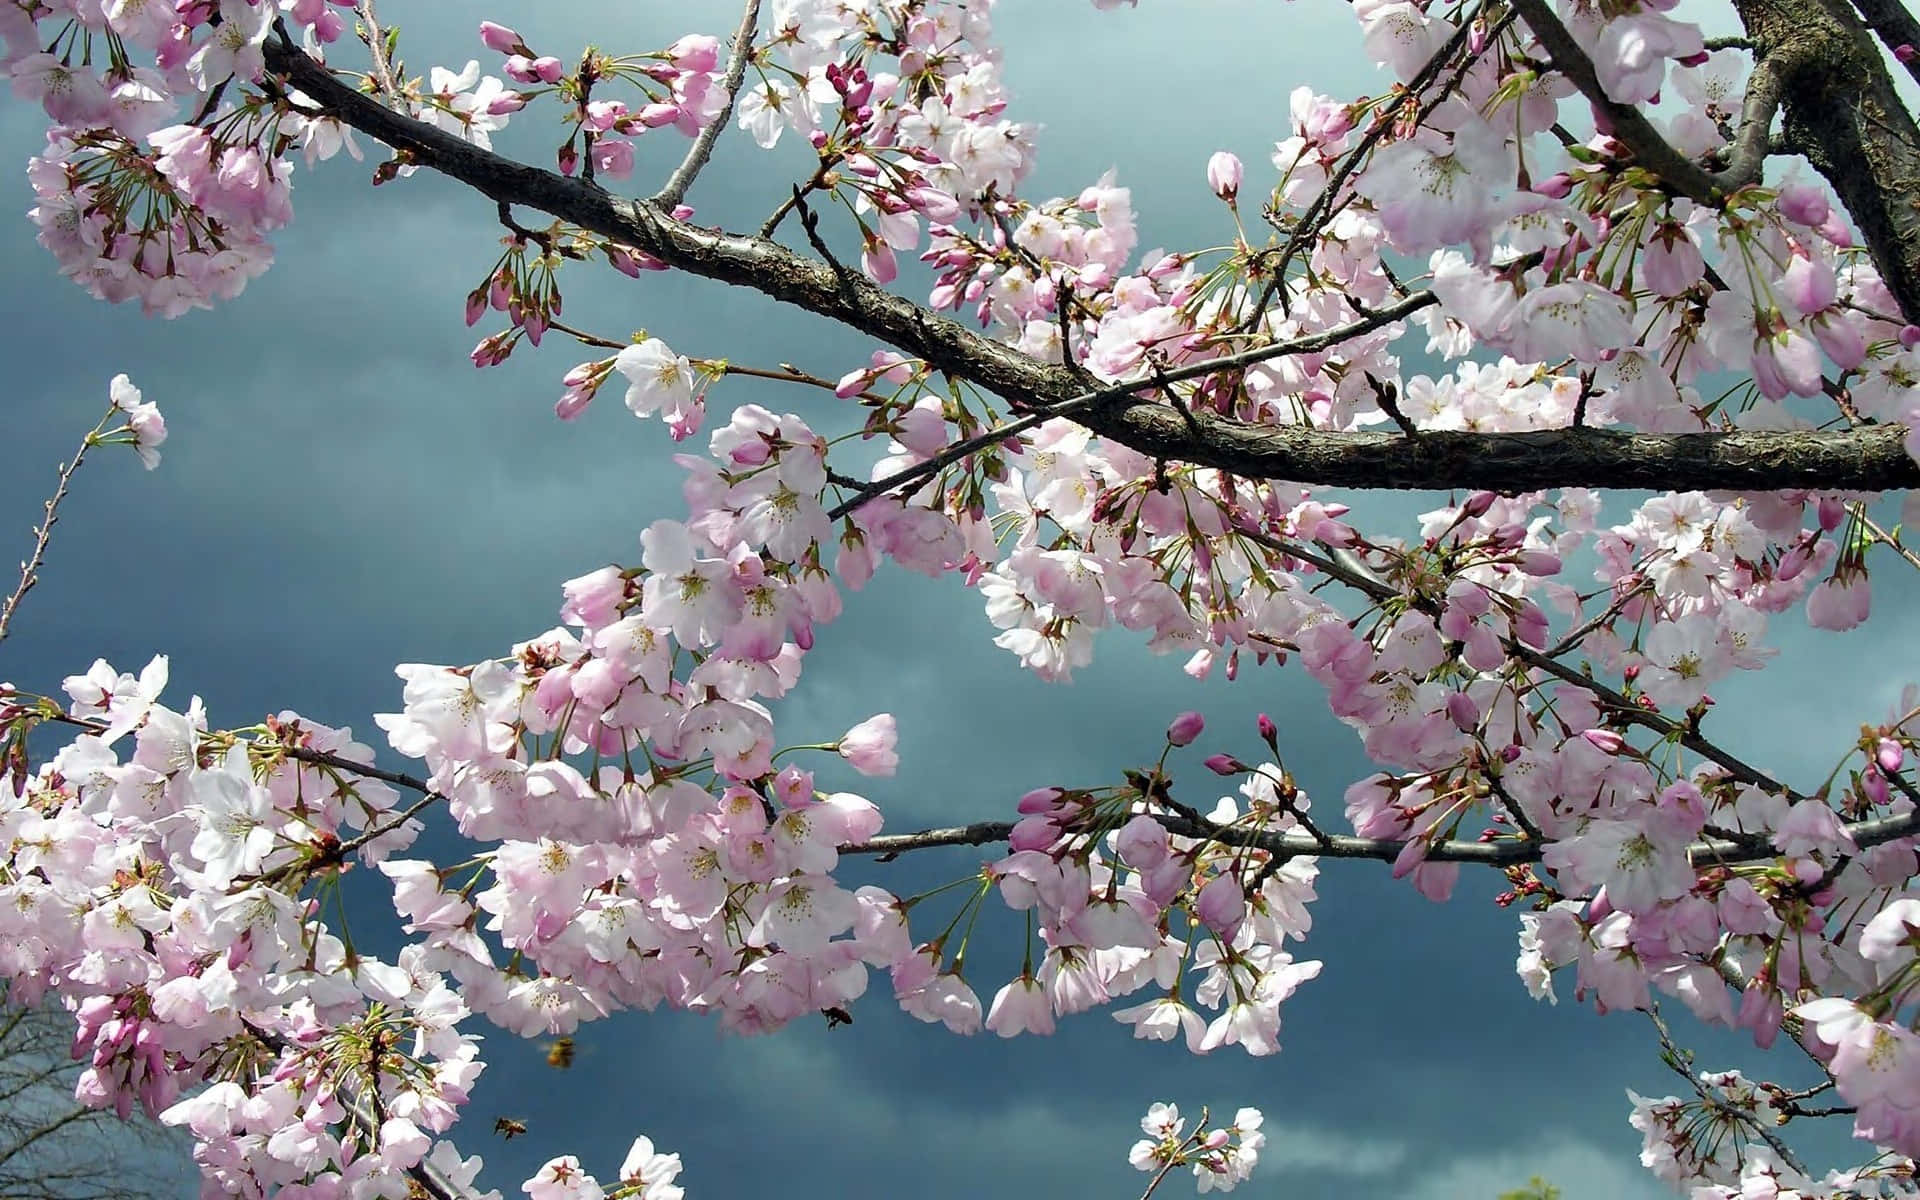 Unaribera De Hermosos Árboles De Sakura En Plena Floración.